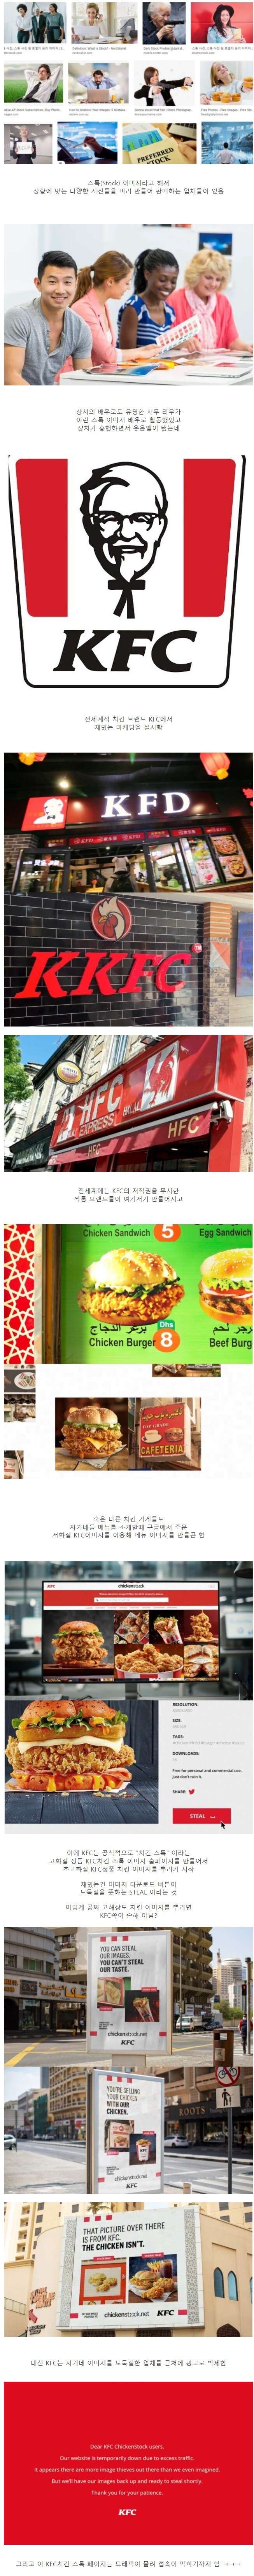 치킨 이미지들을 도둑맞은 KFC의 결단